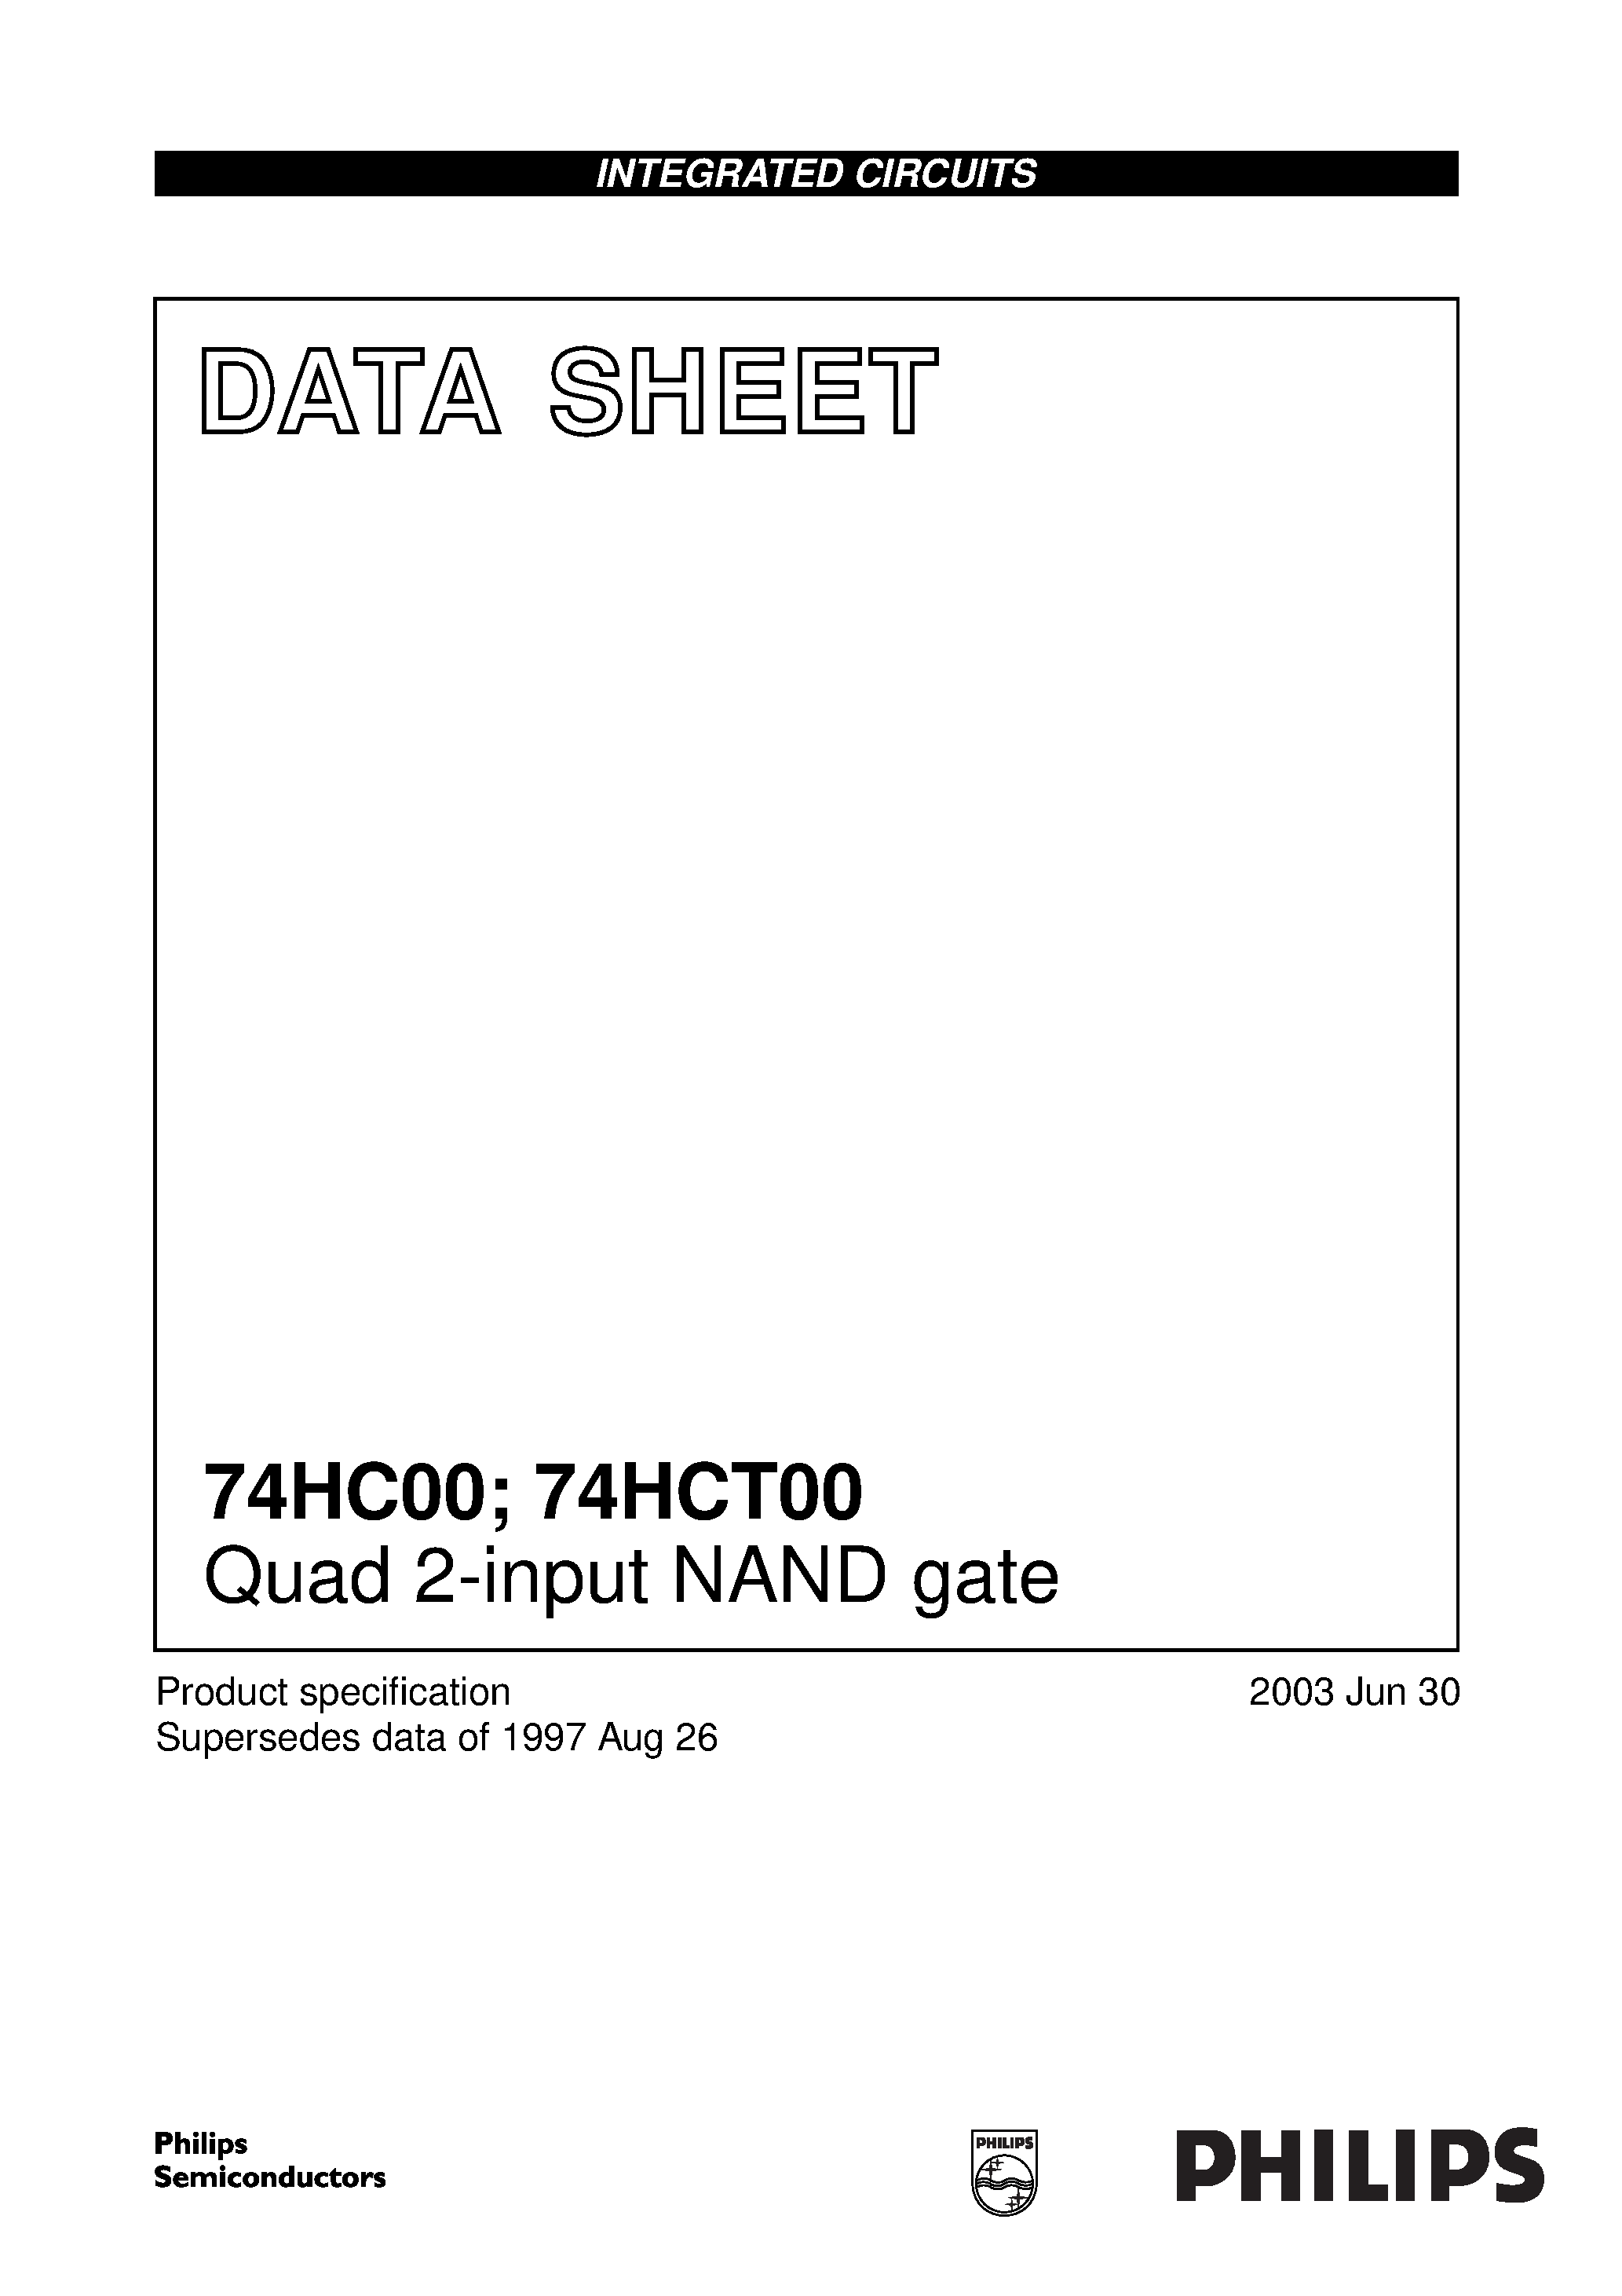 Даташит 74HC00PW - Quad 2-input NAND gate страница 1